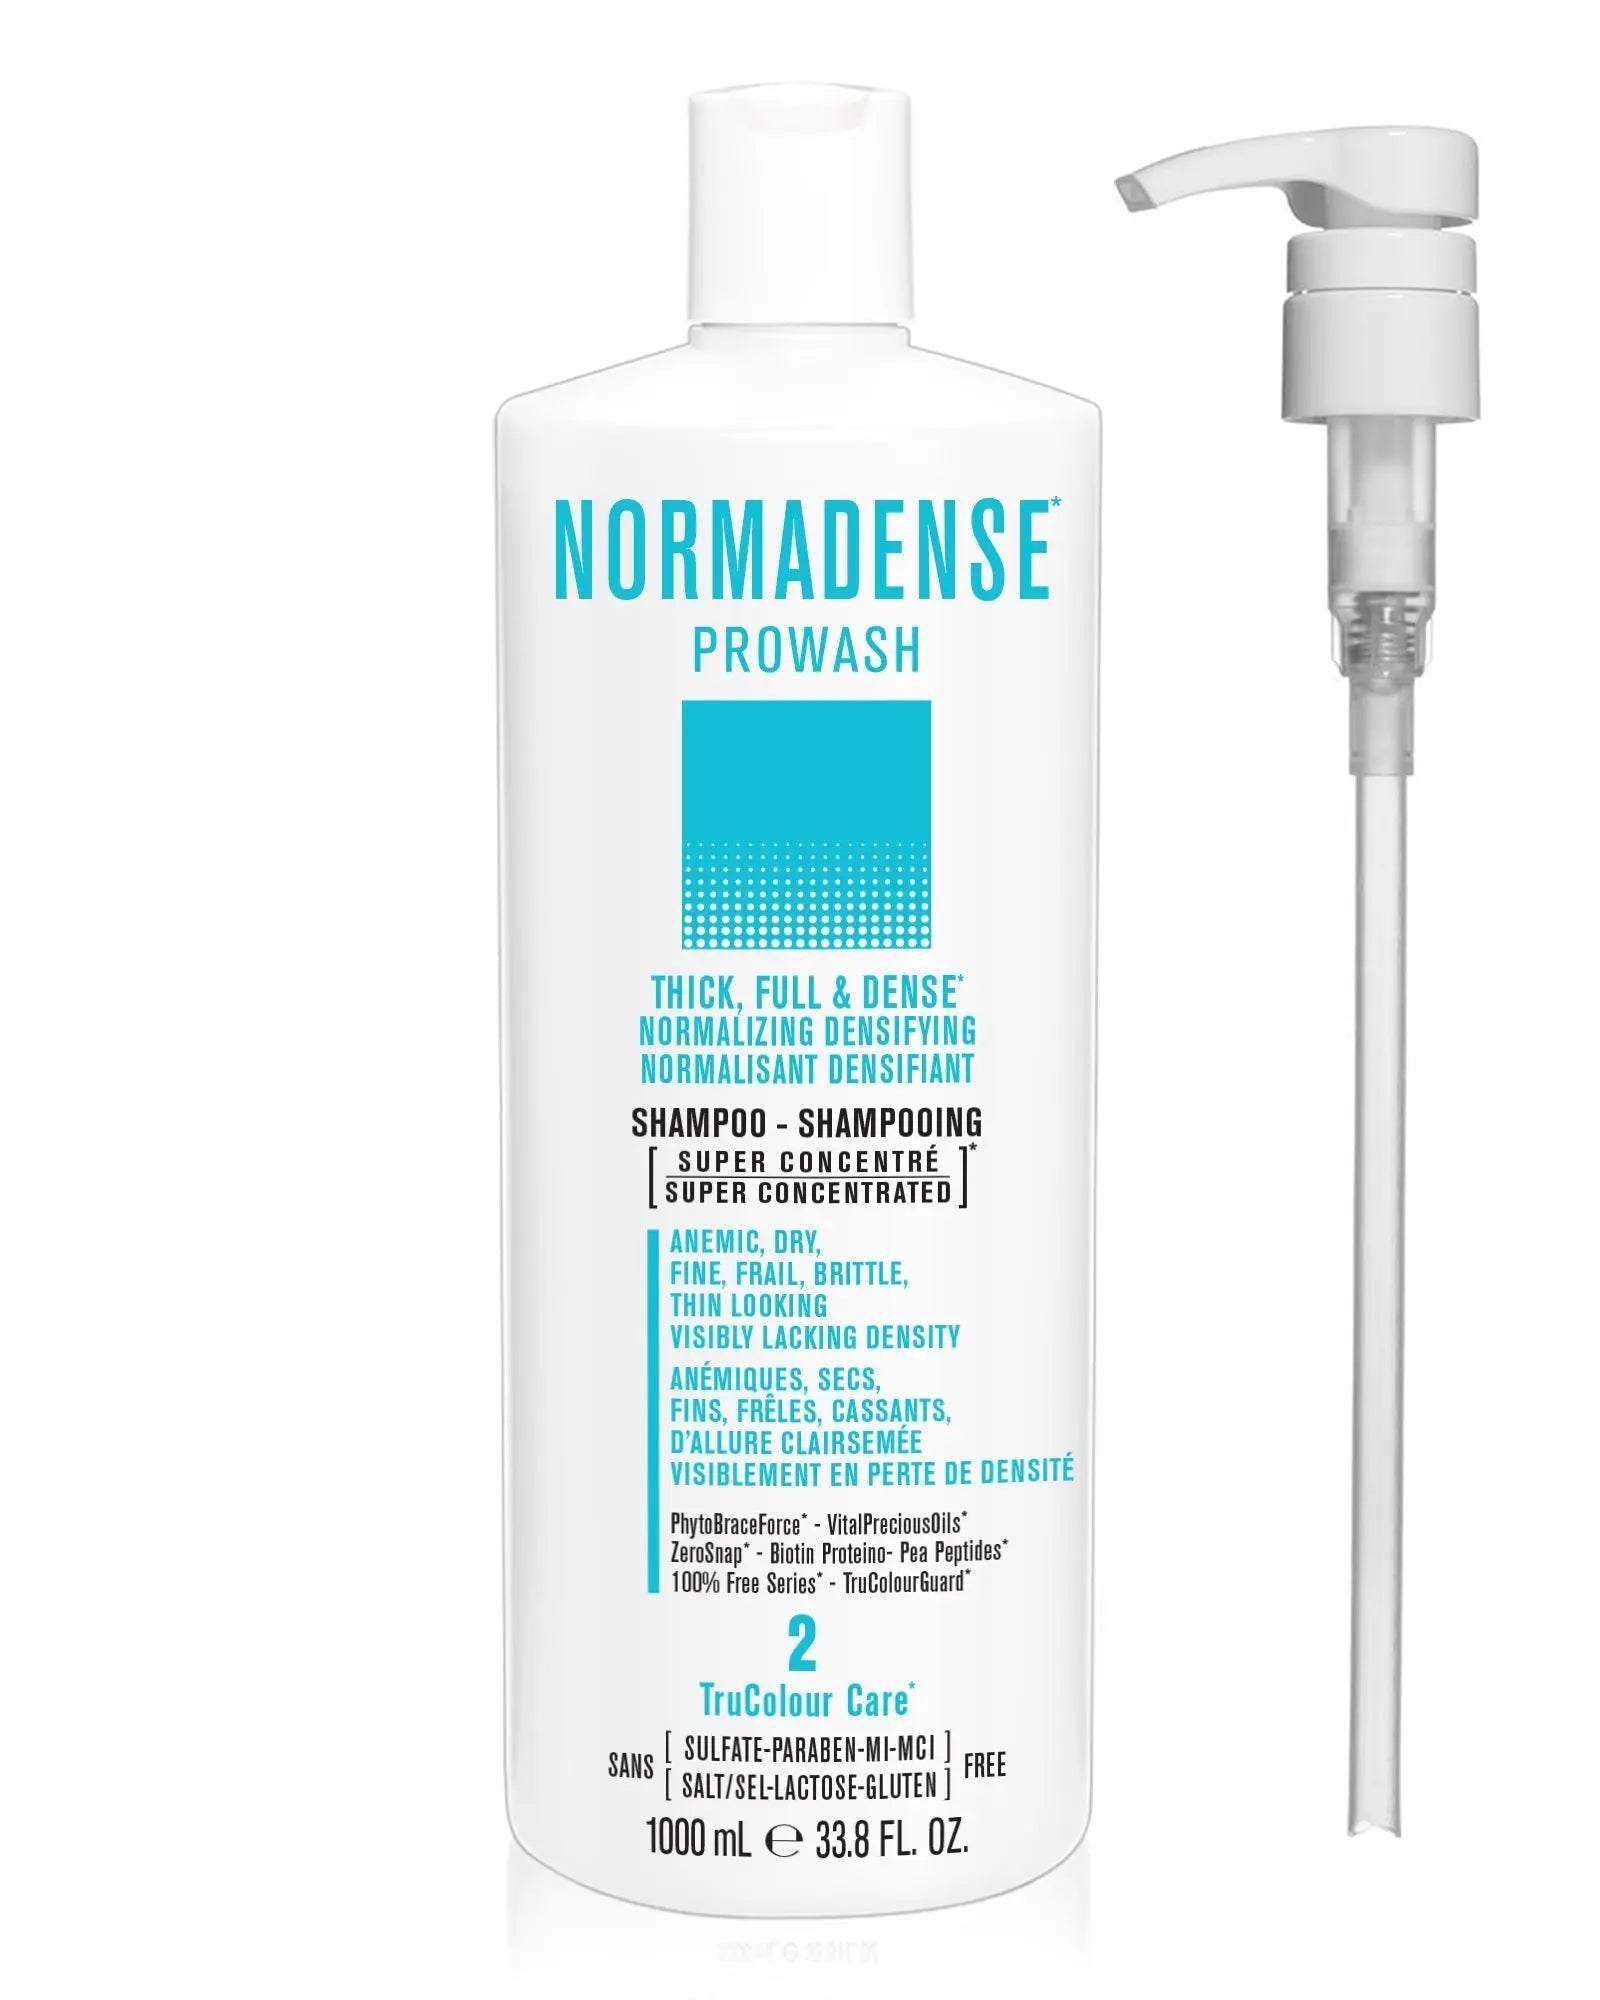 NORMADENSE 2 Prowash Vegan Hair Shampoo & PumpNORMADENSE 2 Prowash Vegan Hair Shampoo & PumpSNOBGIRLS.com